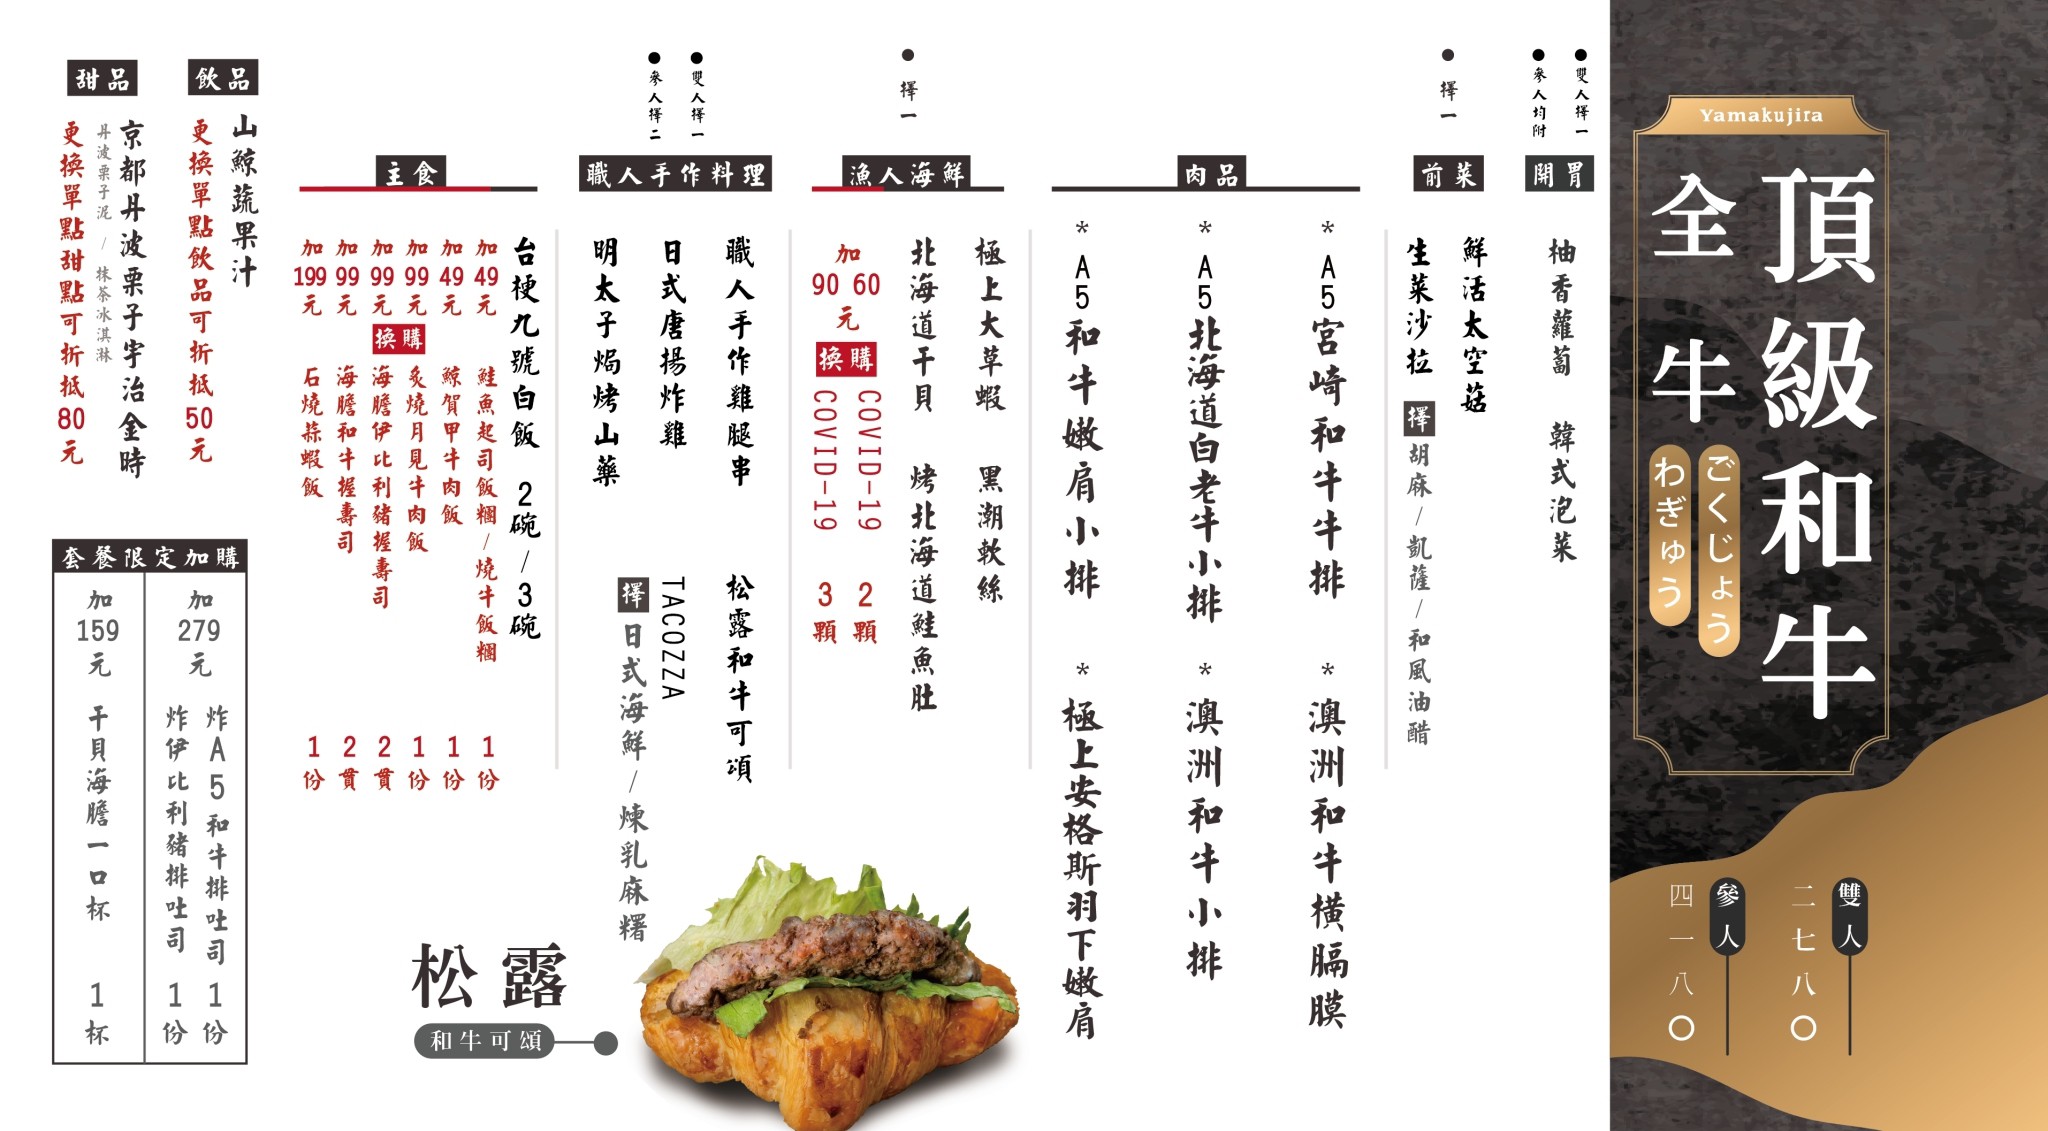 台中美食|山鯨燒肉|最強日本和牛新吃法,吃和牛.穿和服|創意日式燒肉店,帶你一秒飛京都!